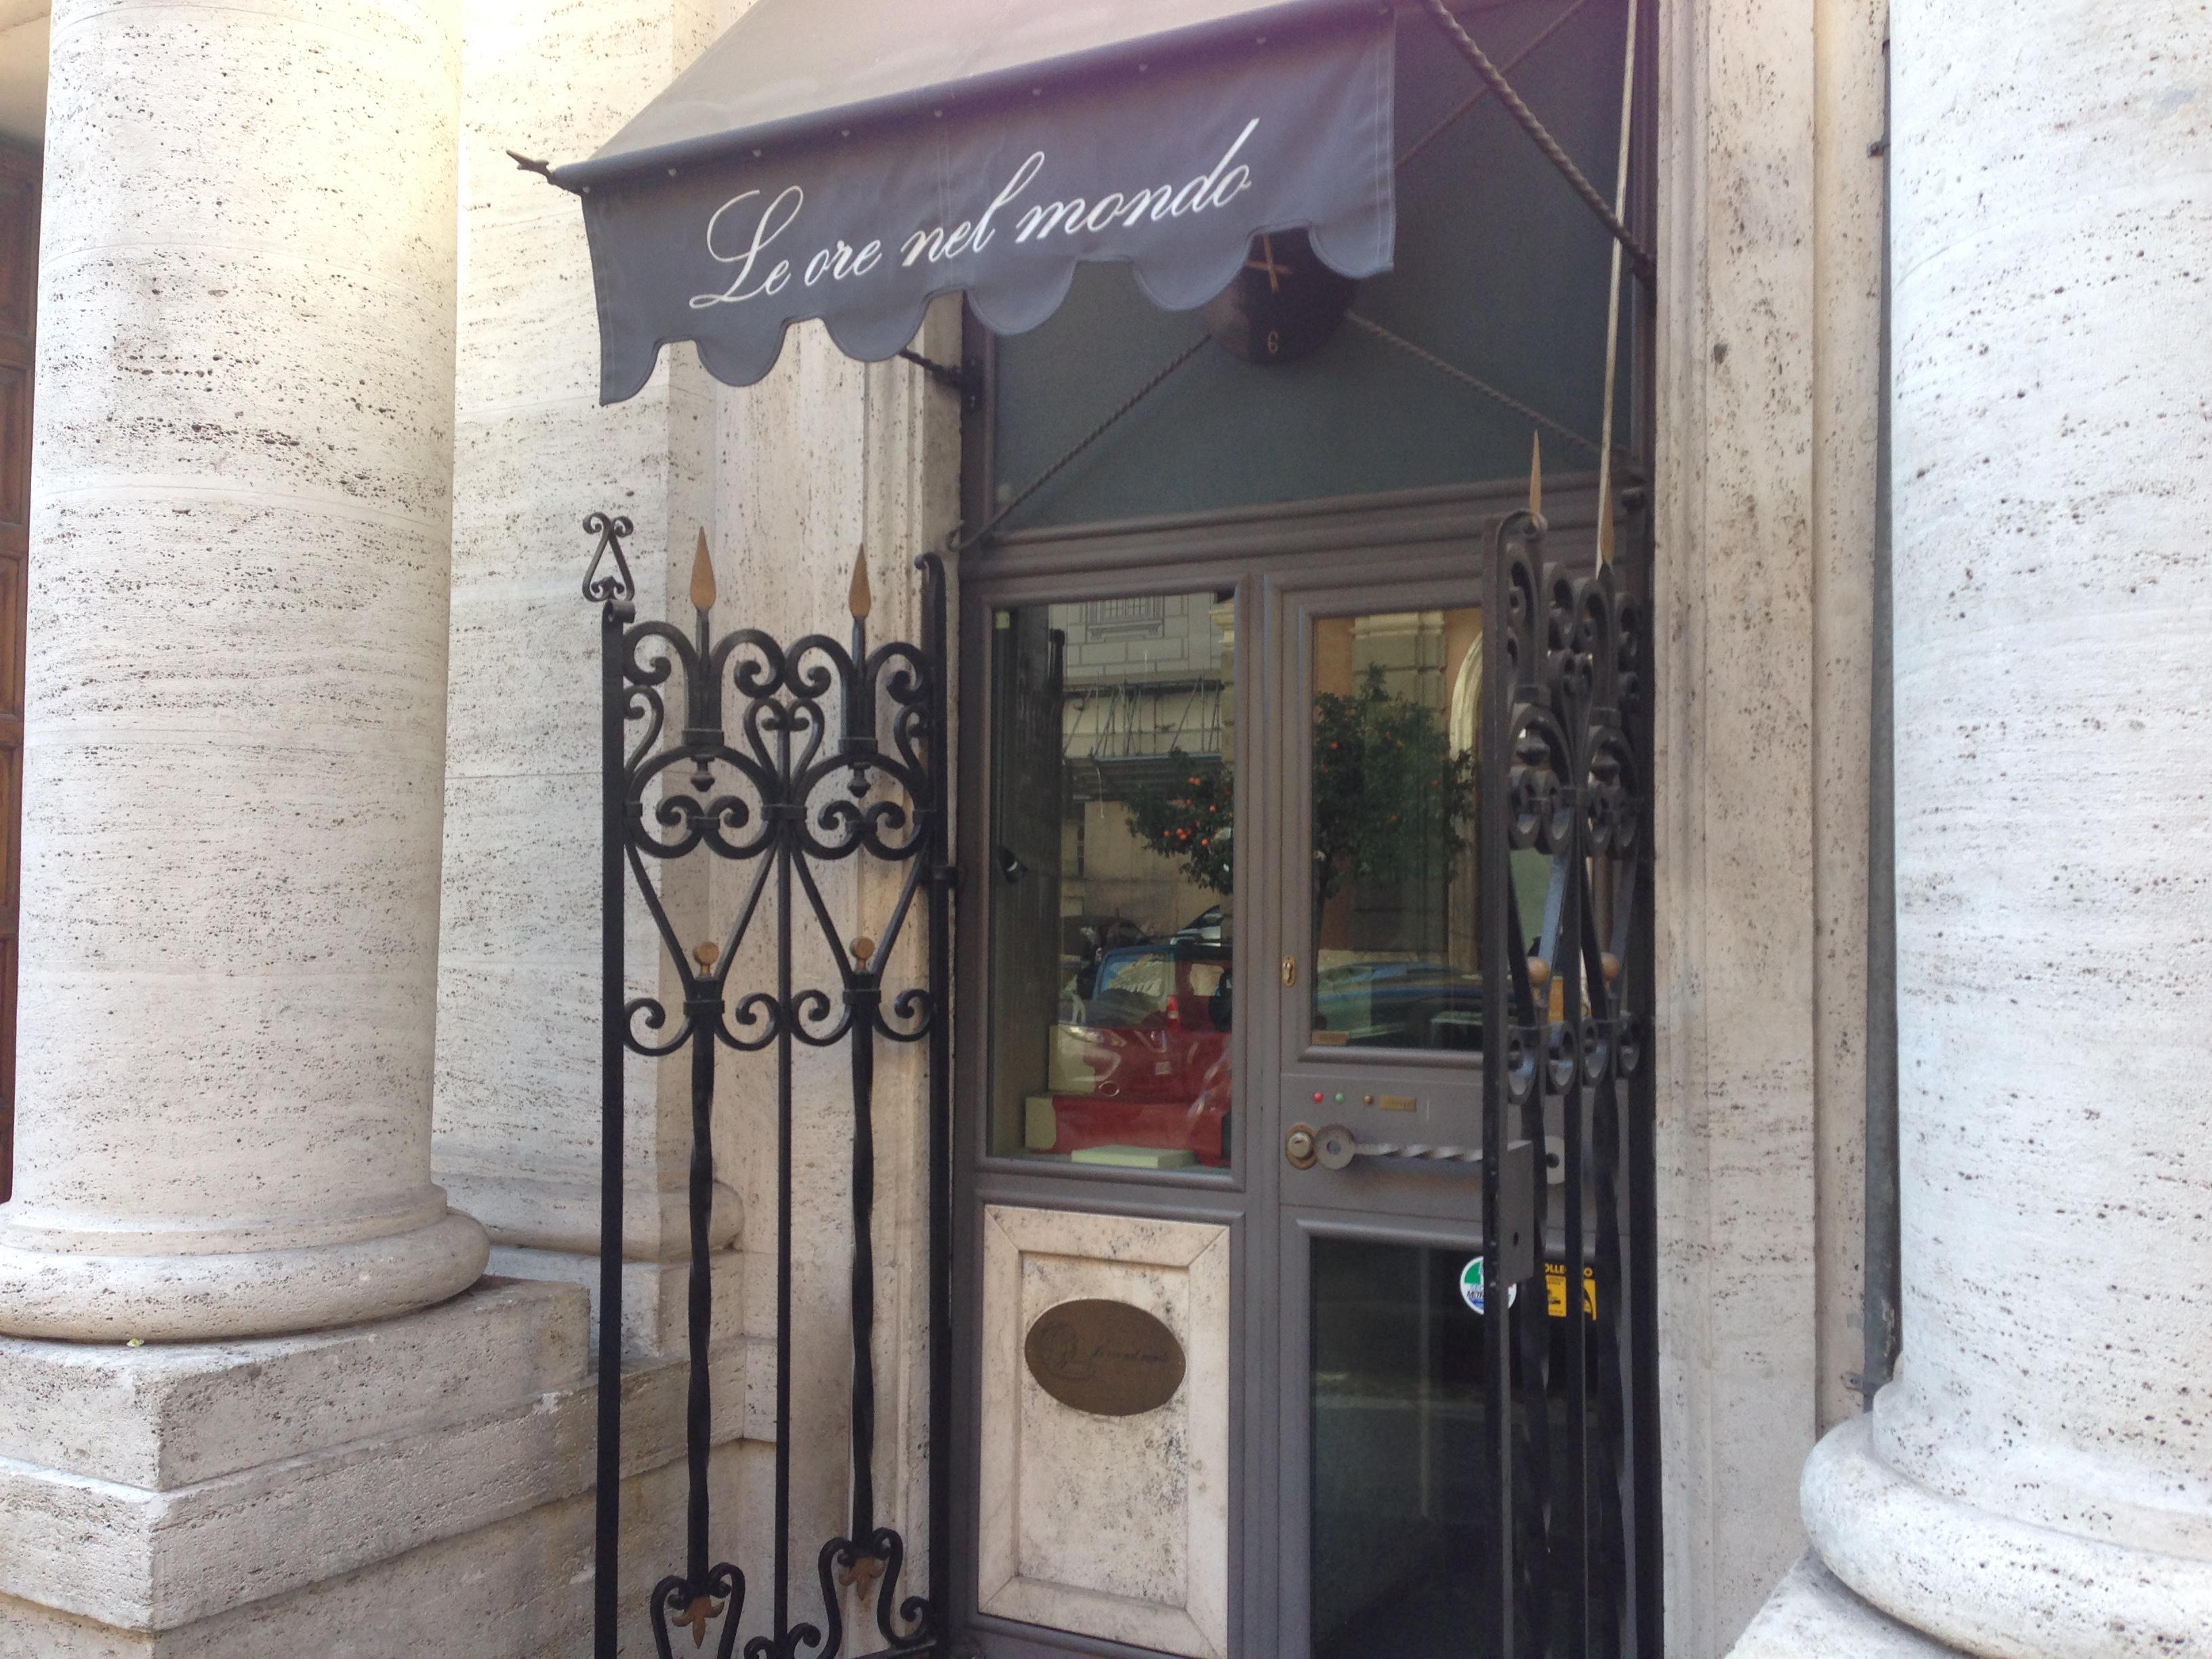 Il negozio di orologi 'Le ore del mondo' a via Barberini (foto Adnkronos)